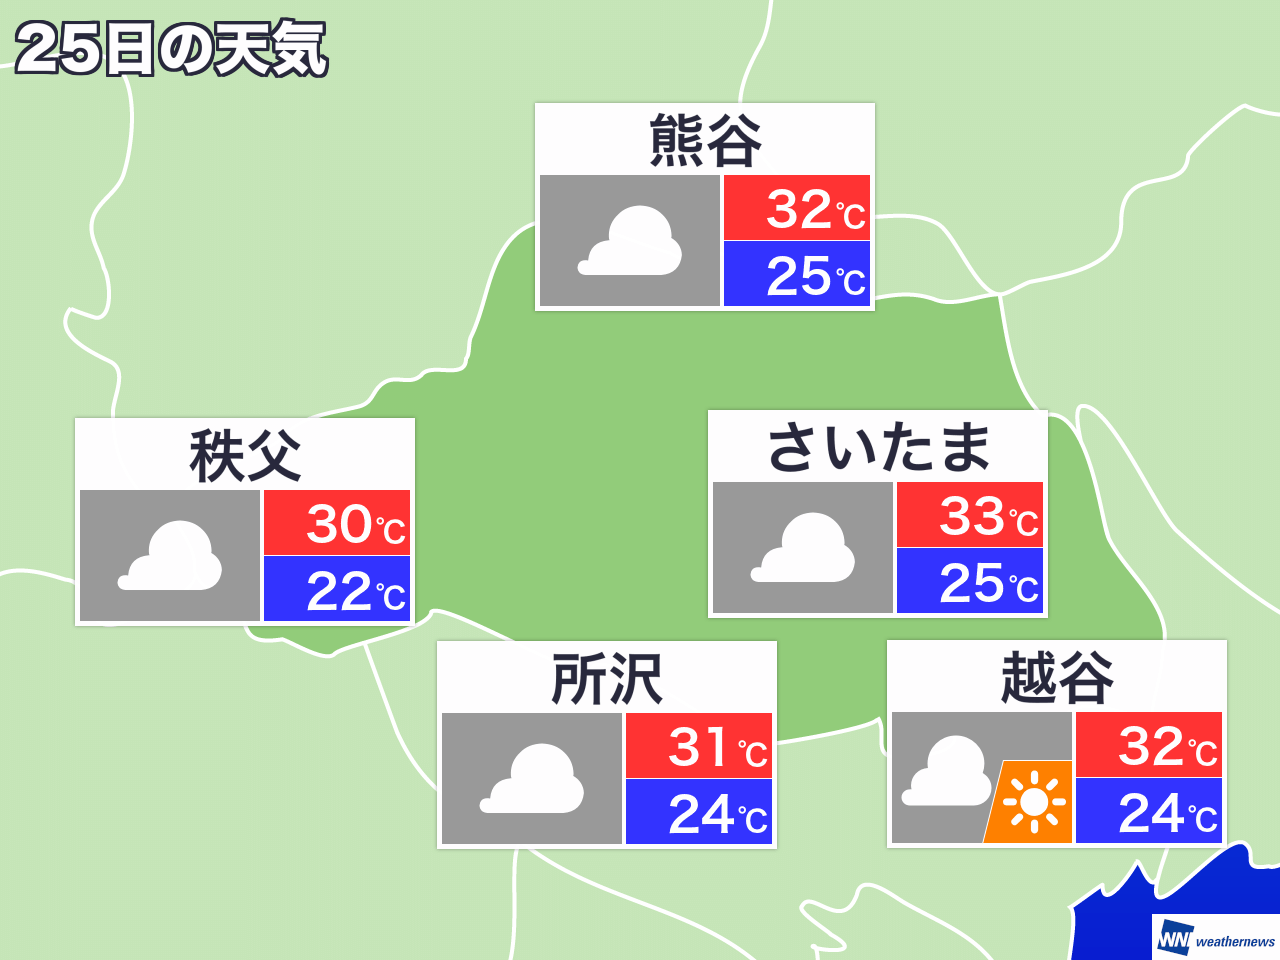 7月5日 金 埼玉県の今日の天気 ウェザーニュース